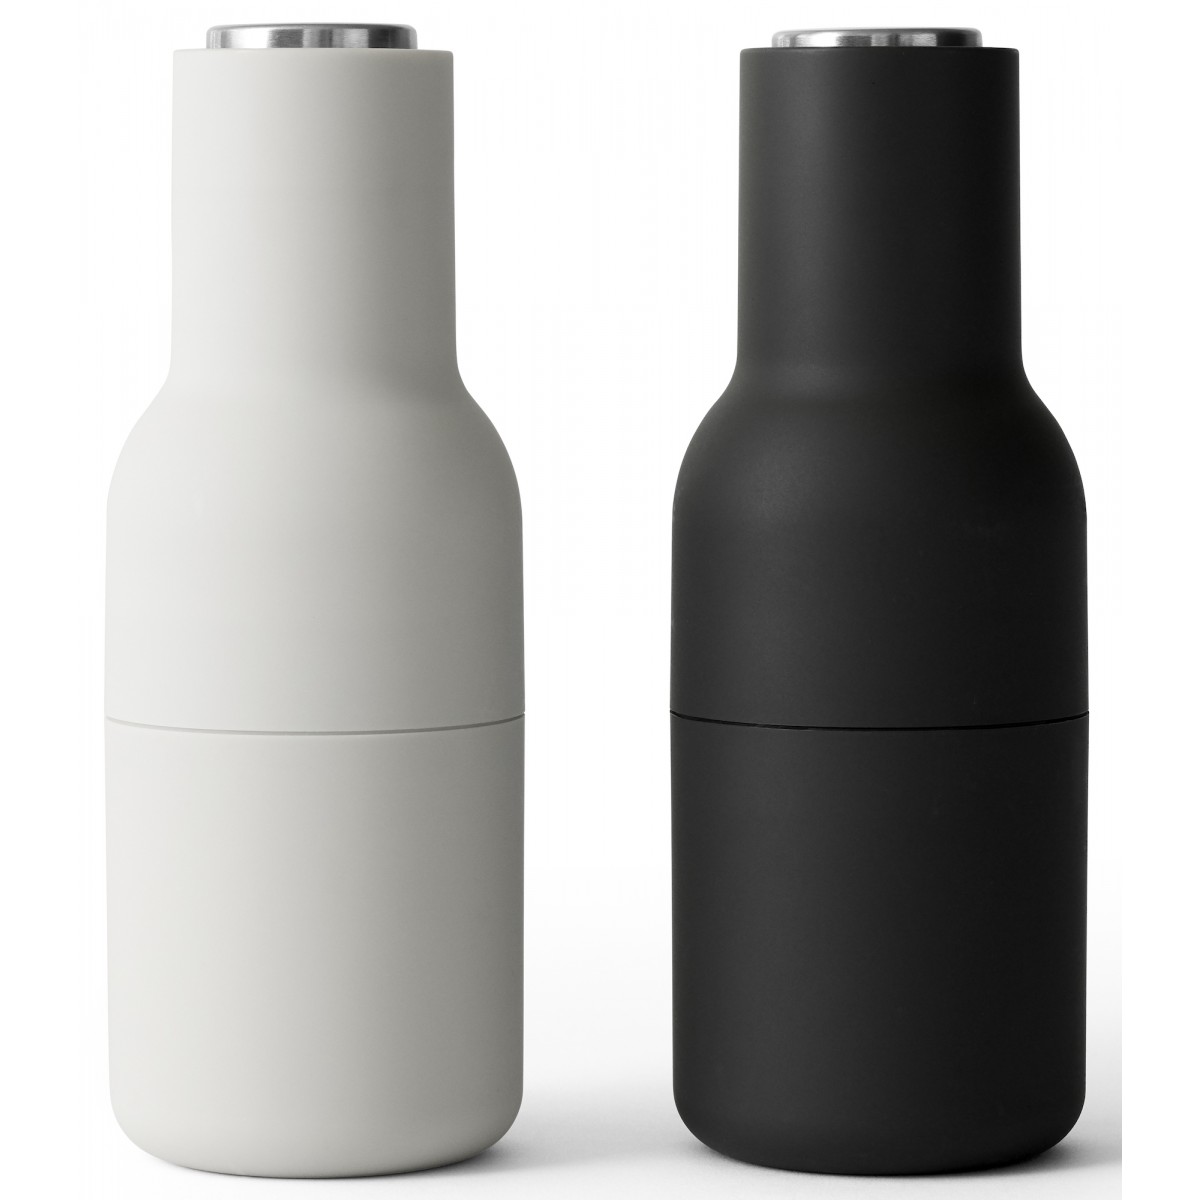 ash, carbon / steel lid - set of 2 Bottle Grinders